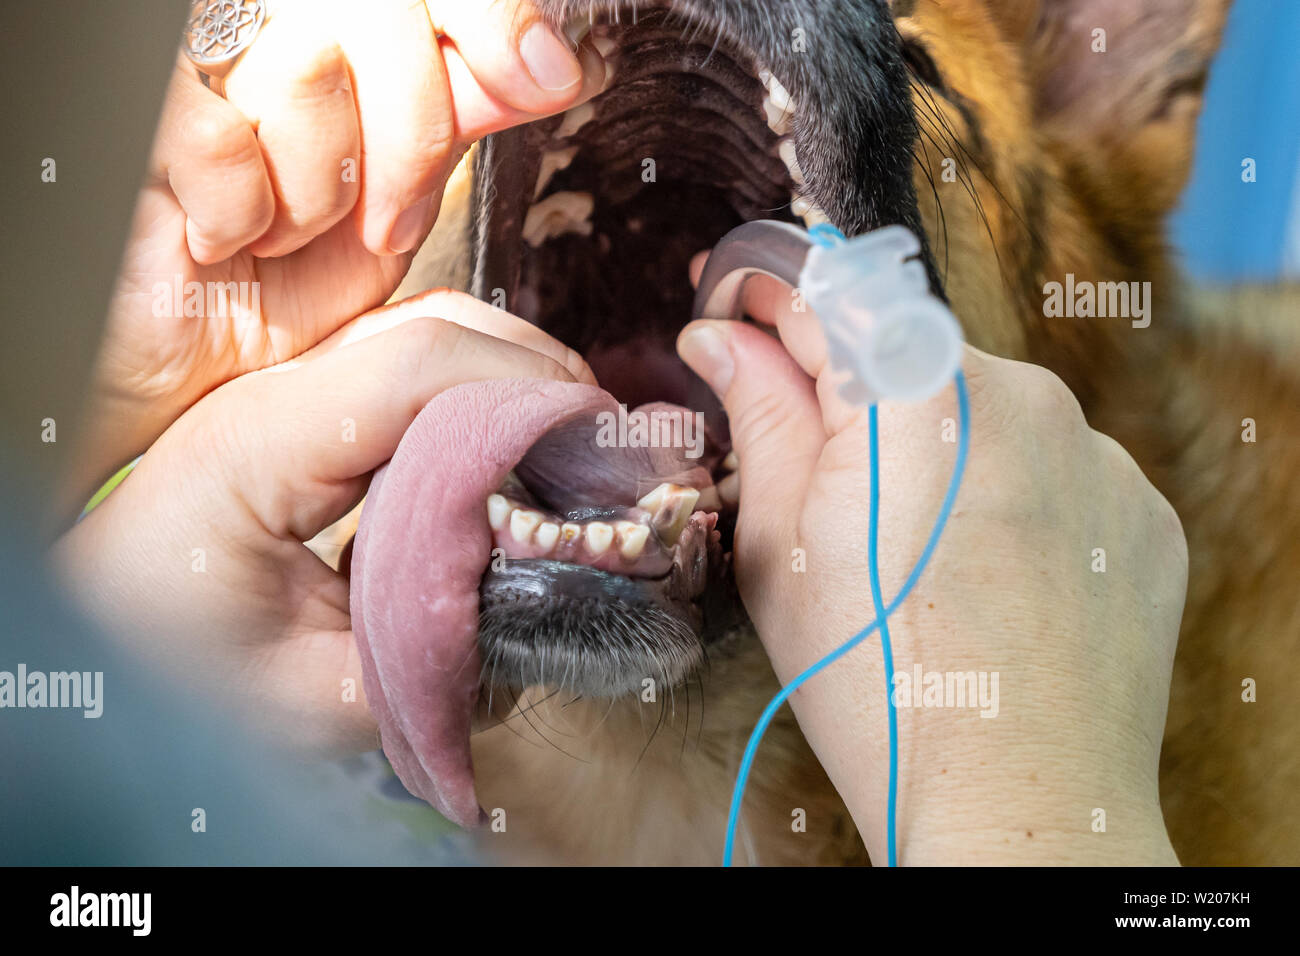 Intubazione endotracheale in un anestetico cane prima di un intervento chirurgico Foto Stock